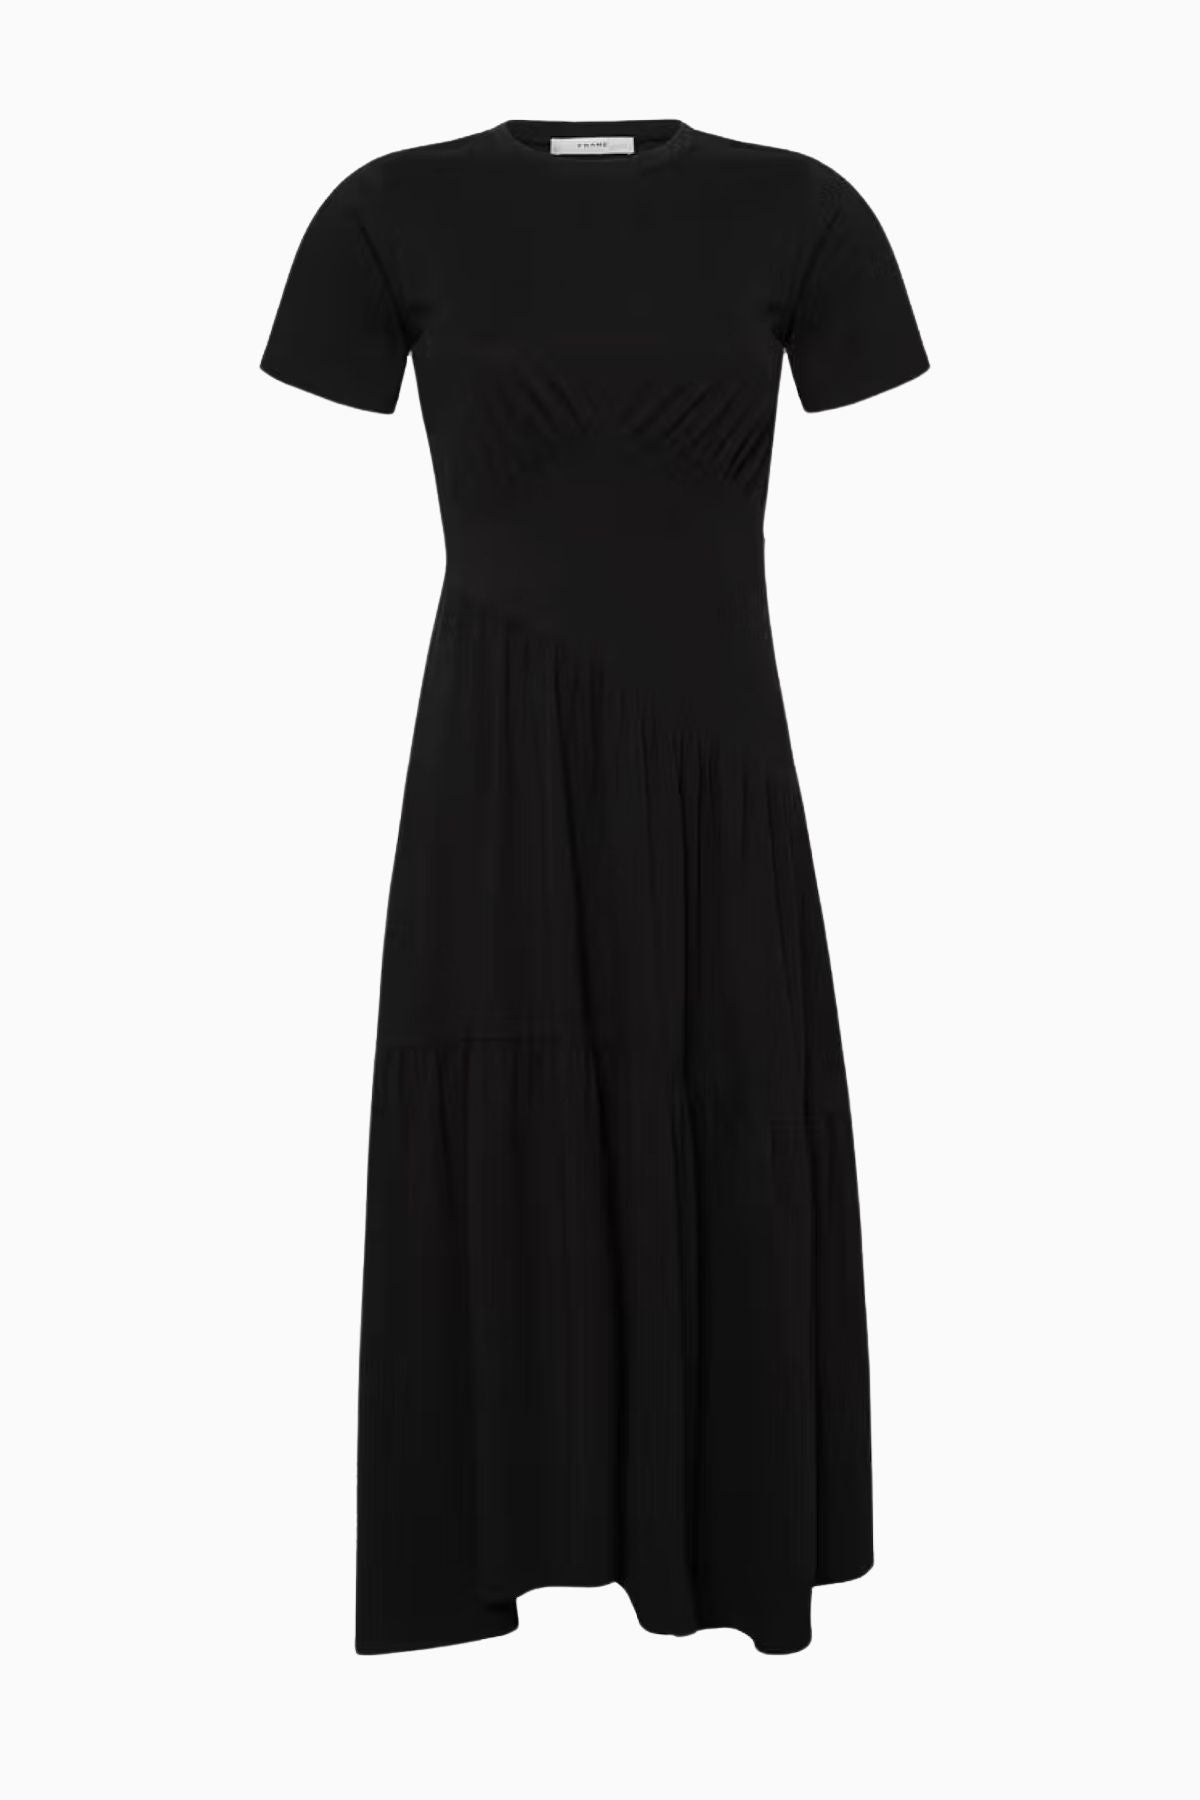 Frame Denim Gathered Seam Short Sleeve Dress - Black